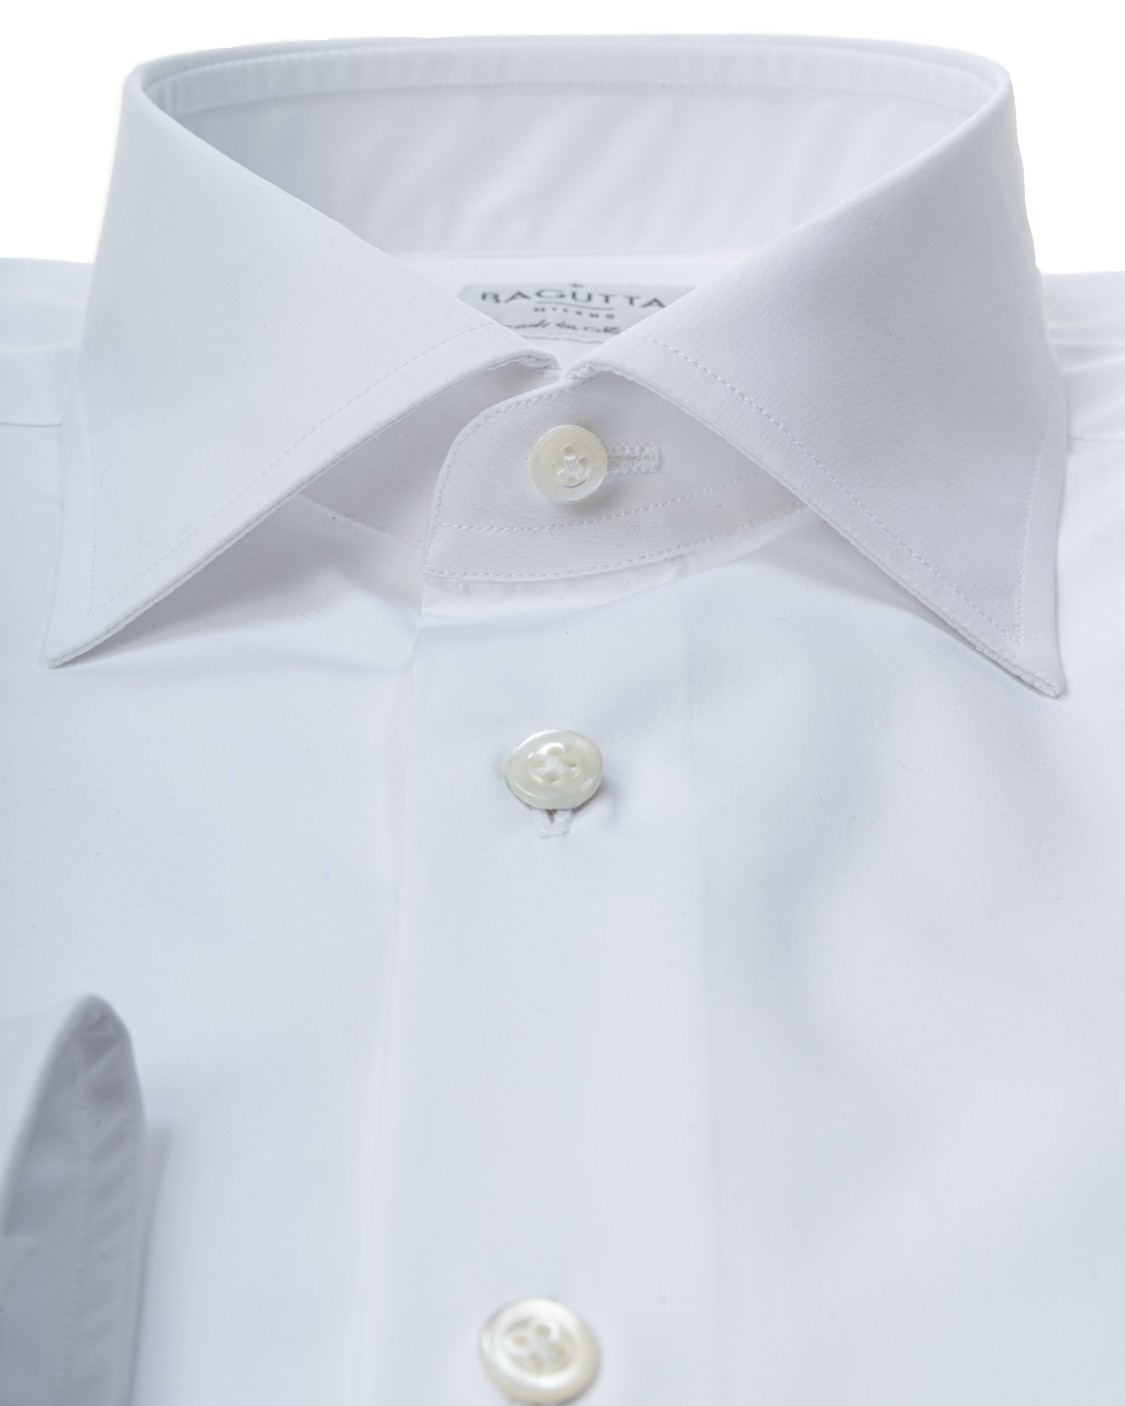 shop BAGUTTA  Camicia: Bagutta camicia bianca in cotone.
Colletto semi francese.
Slim fit.
Polsini squadrati.
Composizione: 100% cotone.
Made in Italy.. B345V CN7767-001 number 3828648